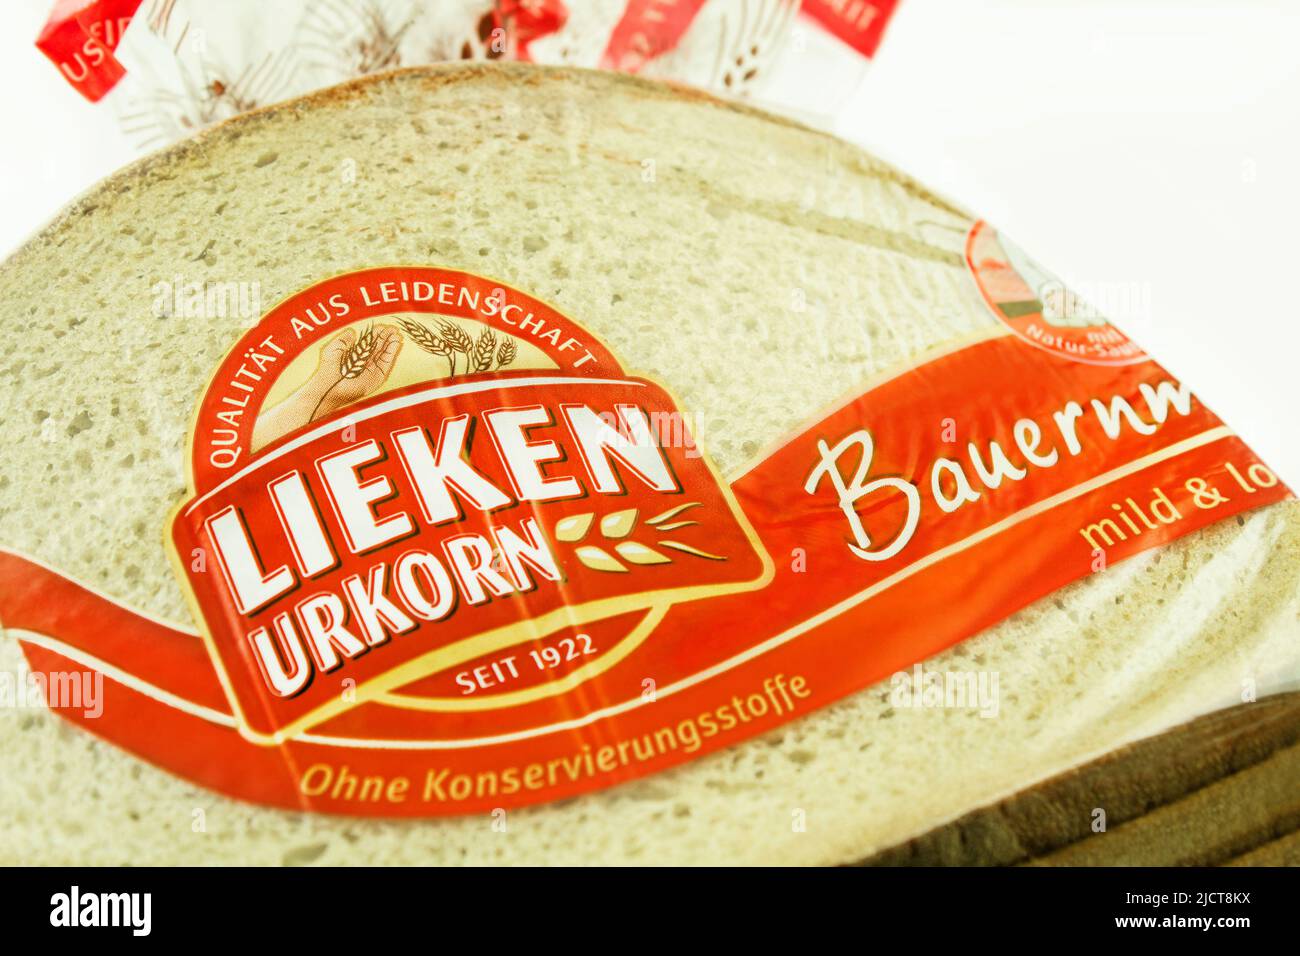 Lieken Urkorn Brot in der Verpackung Stock Photo